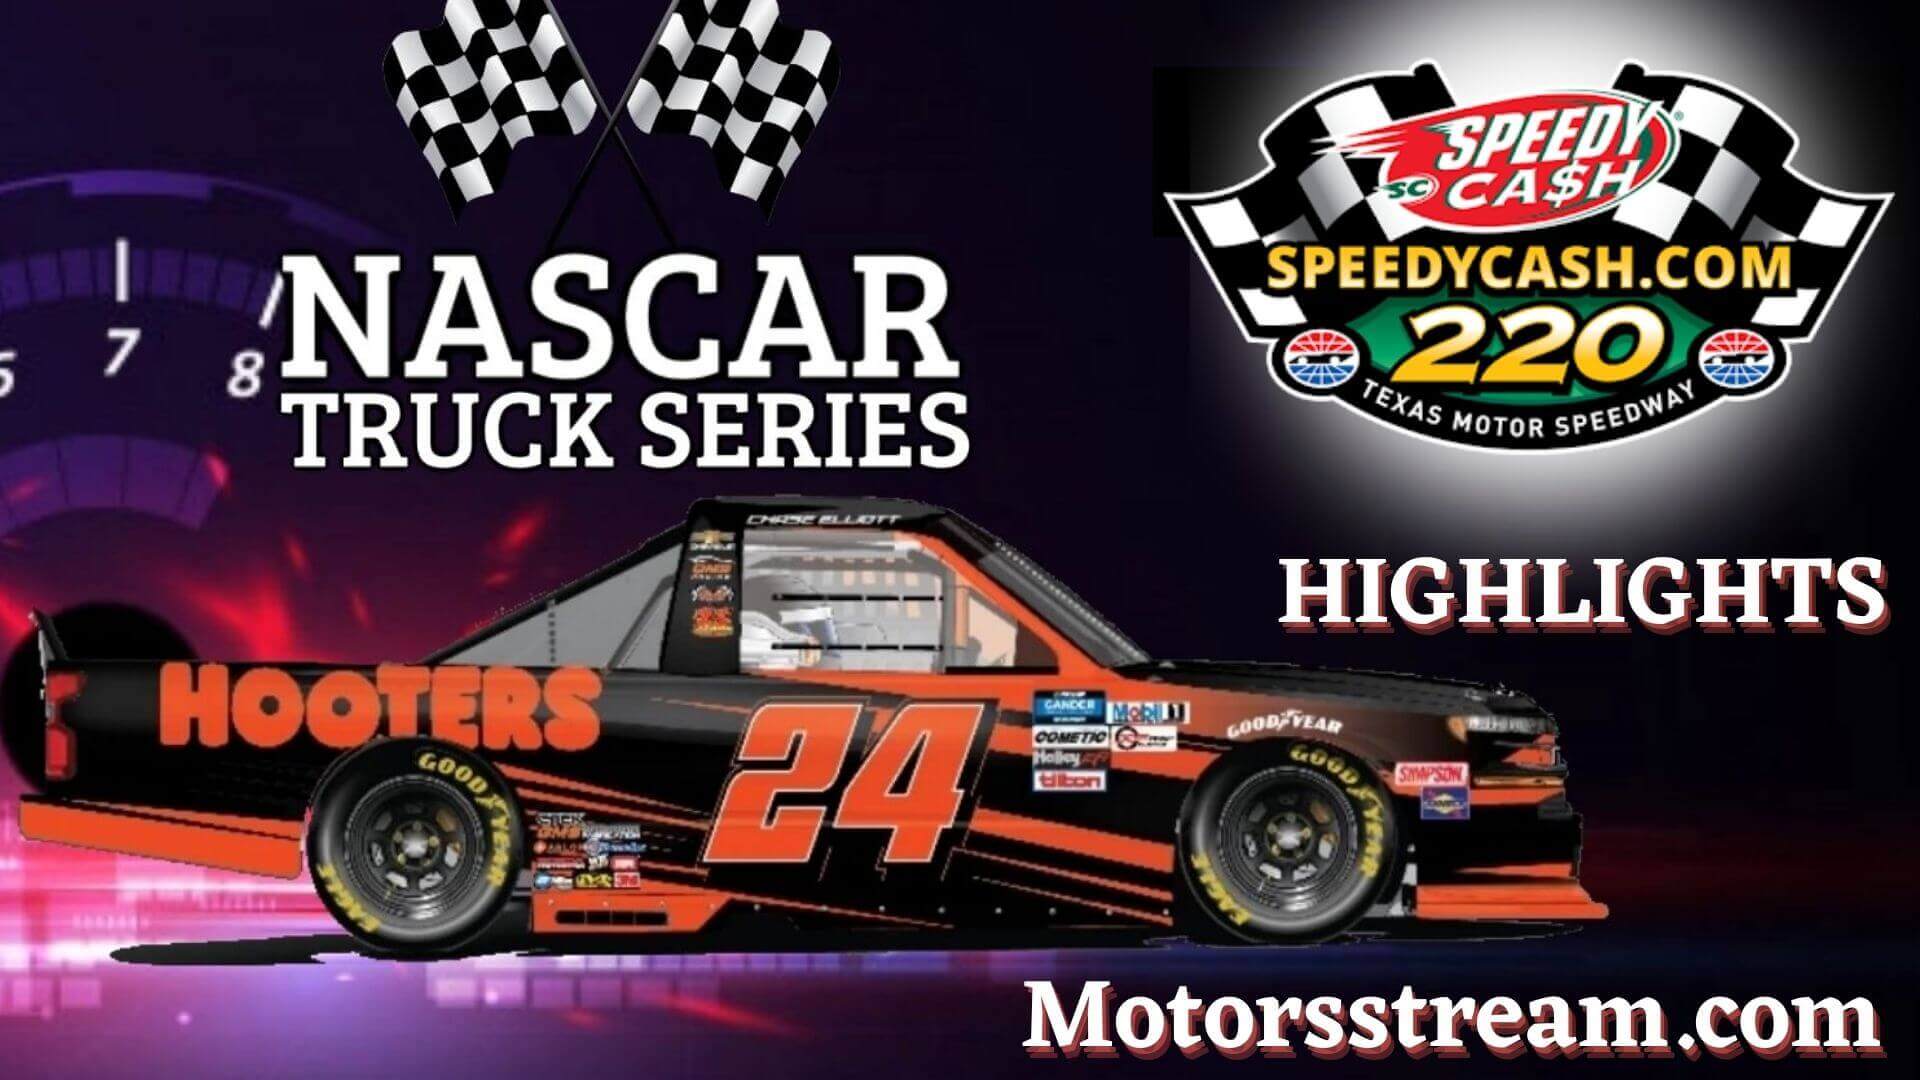 NASCAR SpeedyCashcom Highlights 2021 Truck Series